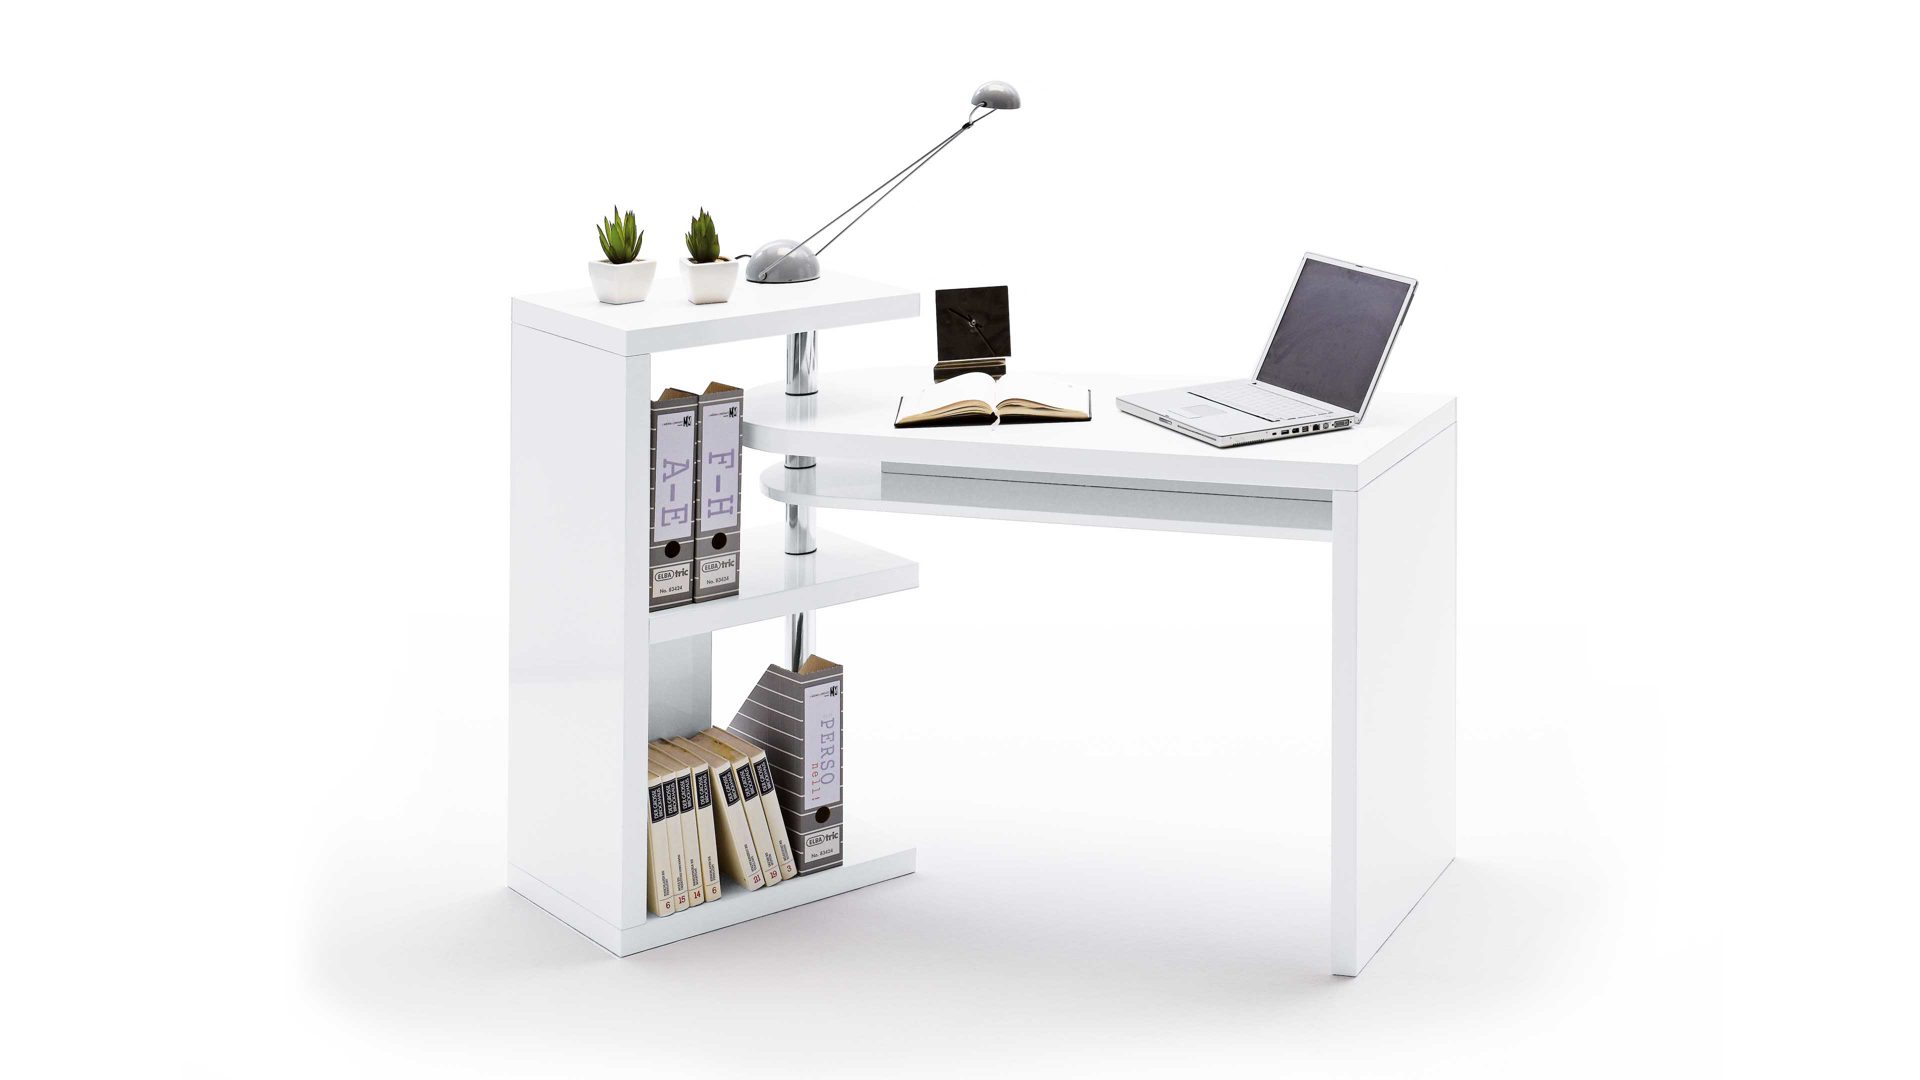 Schreibtisch Mca furniture aus Holz in Weiß Schreibtisch-Kombination für komfortable Büroeinrichtungen weiße Hochglanzoberflächen – ca. 145 x 94 x 50 cm